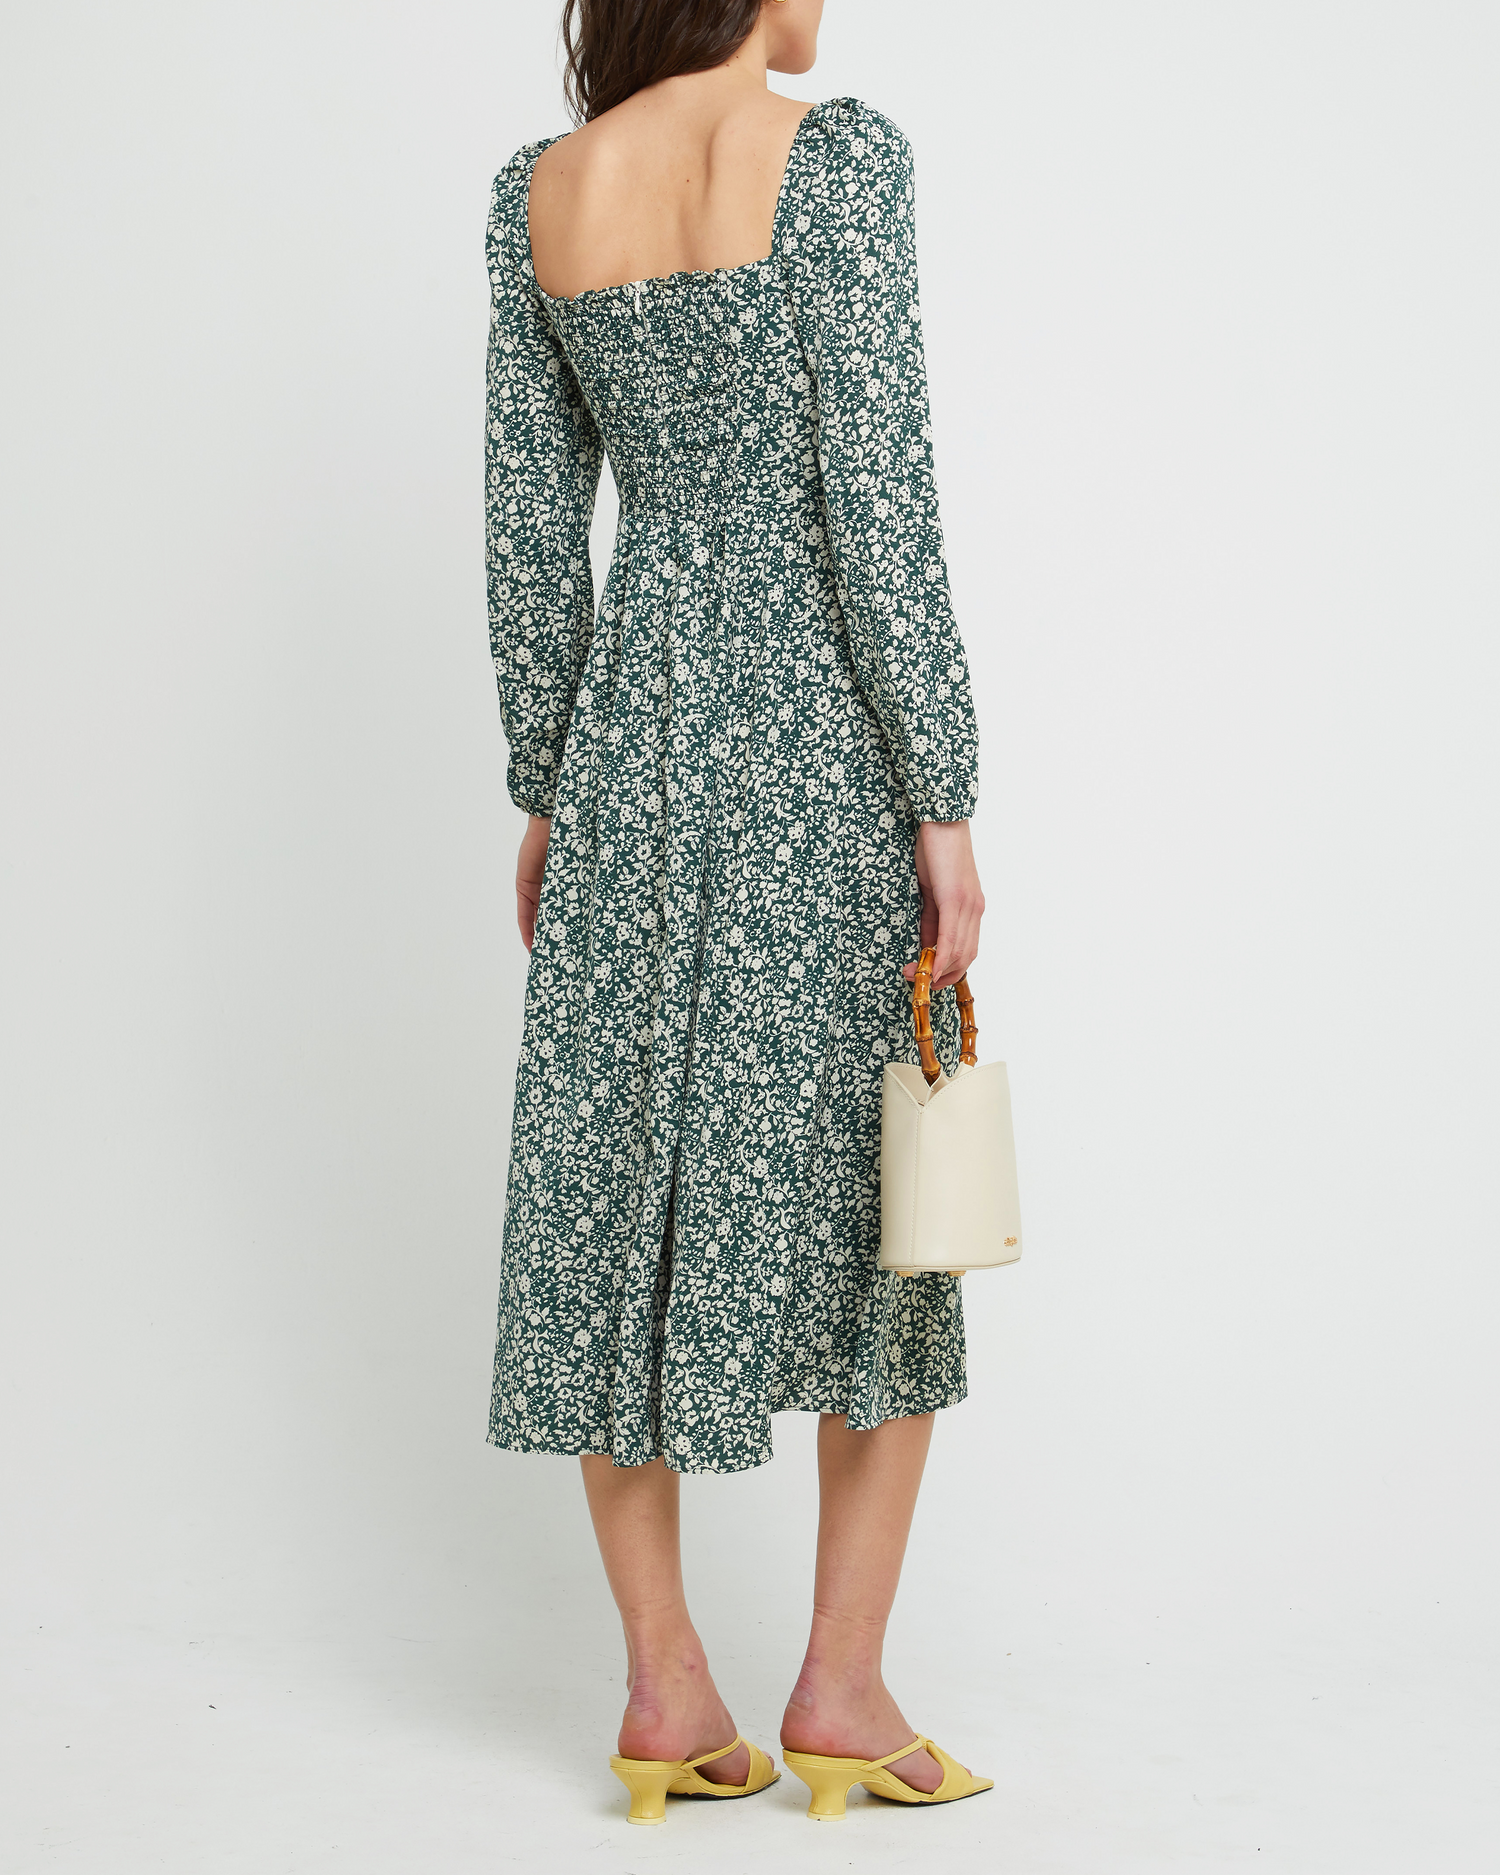 Second image of Lenon Dress, a green midi dress, side skirt slit, long sleeves, square neckline